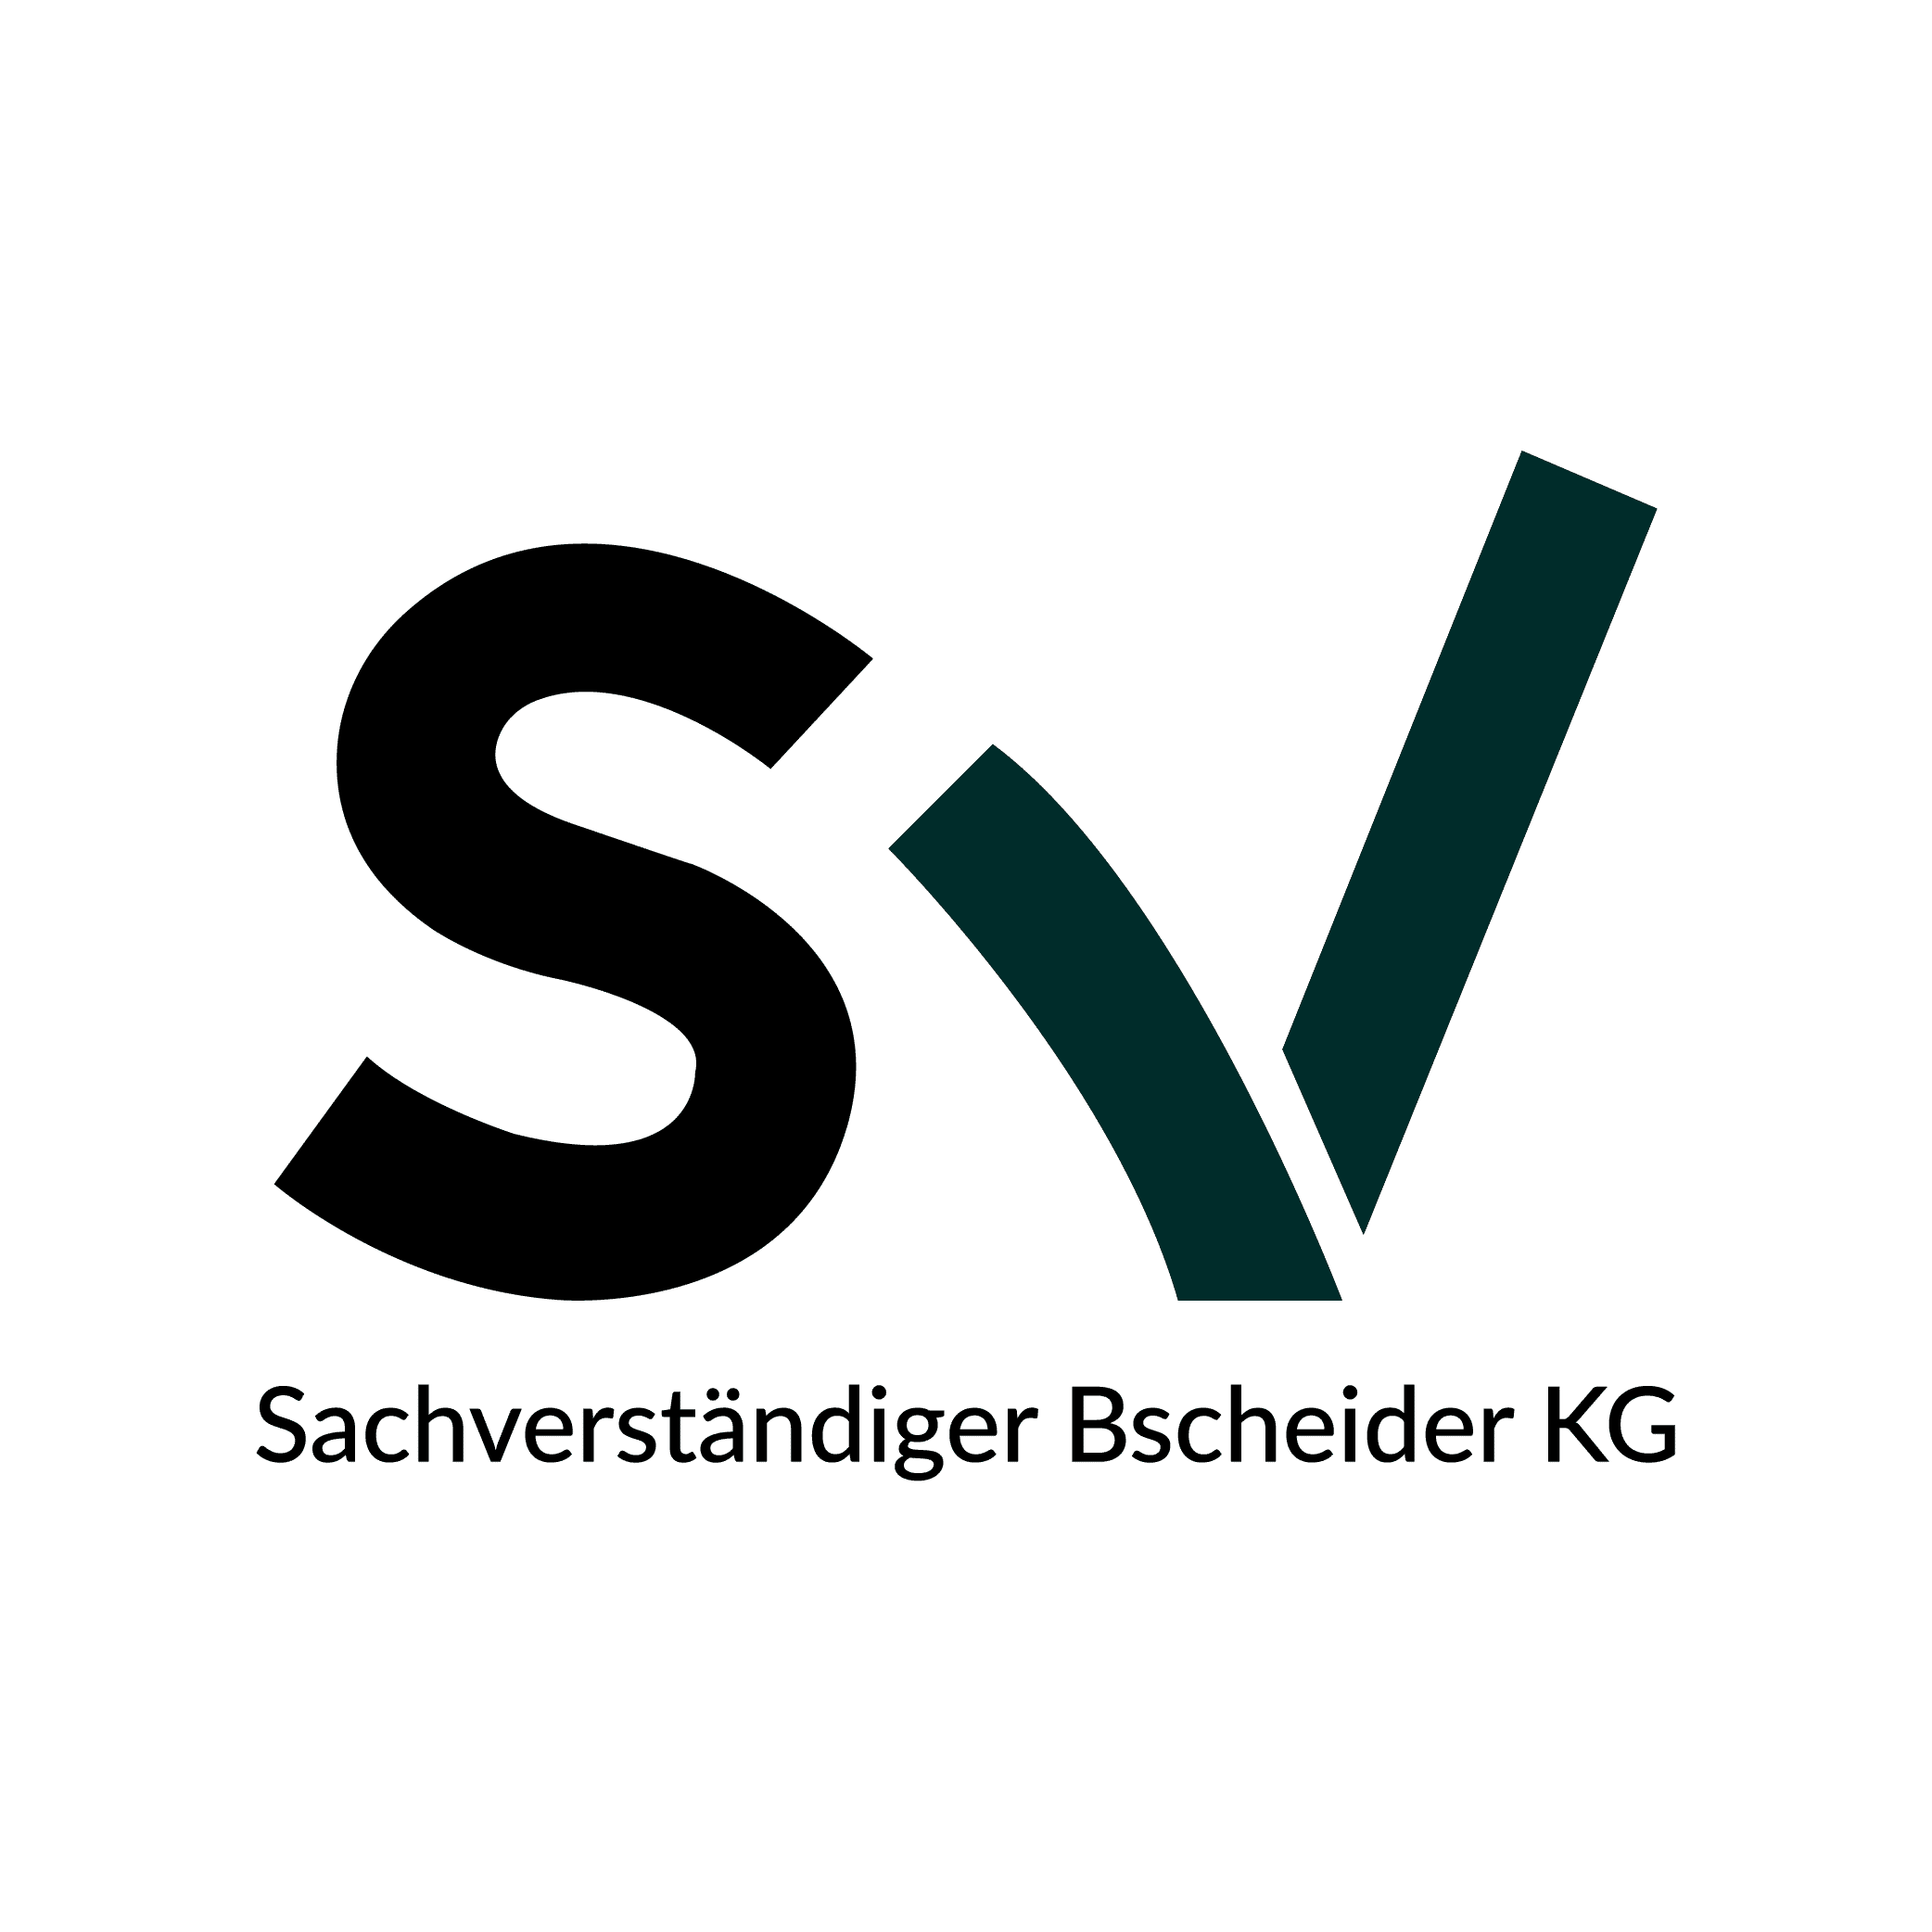 Bscheider-Logo_Zeichenflaeche-1-1.png